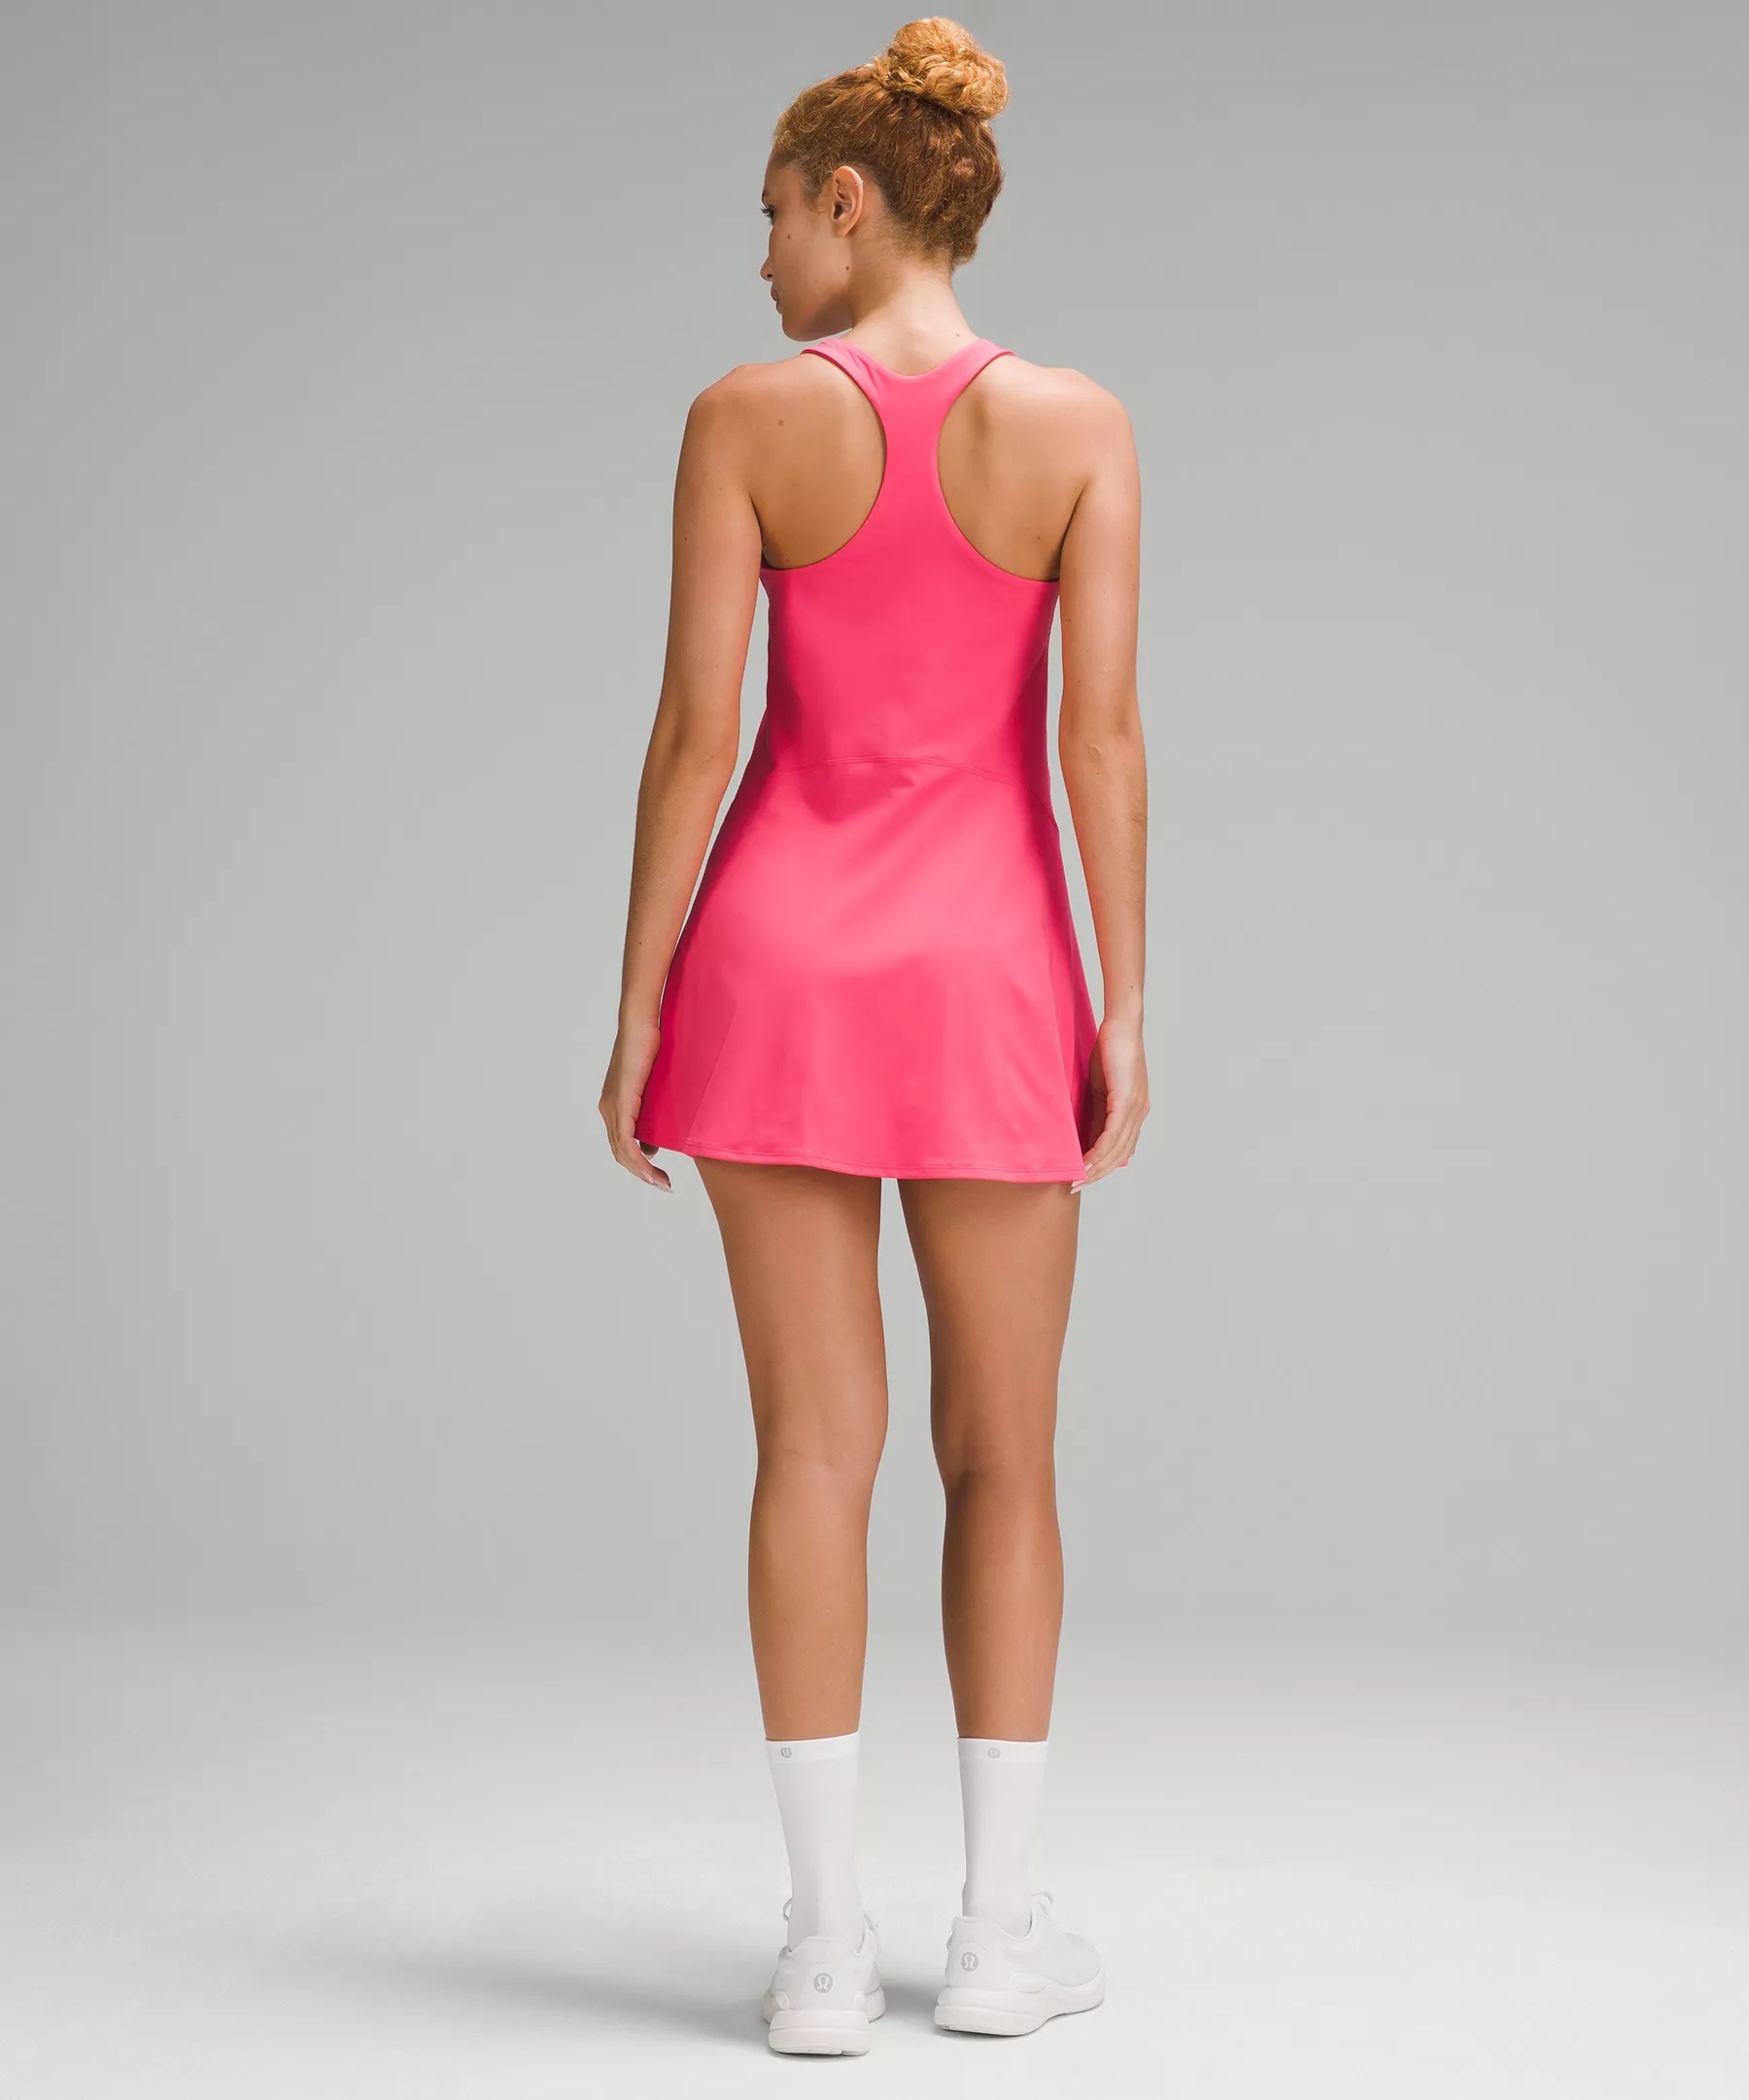 Lightweight Linerless Tennis Dress - 2